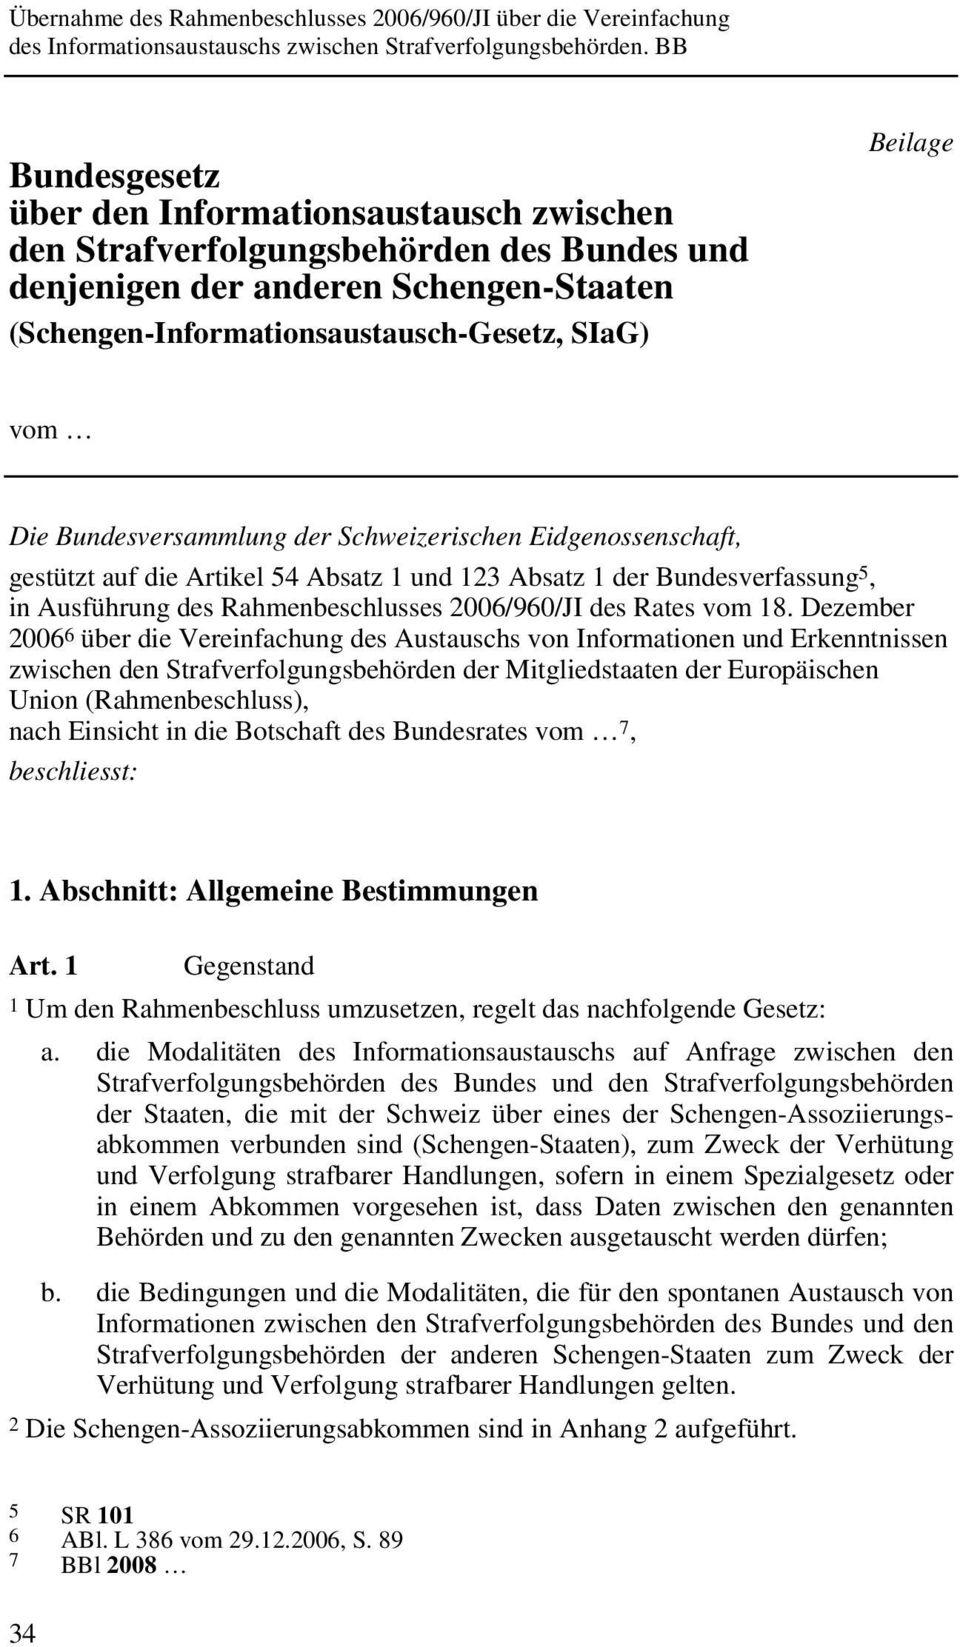 Dezember 2006 6 über die Vereinfachung des Austauschs von Informationen und Erkenntnissen zwischen den Strafverfolgungsbehörden der Mitgliedstaaten der Europäischen Union (Rahmenbeschluss), nach